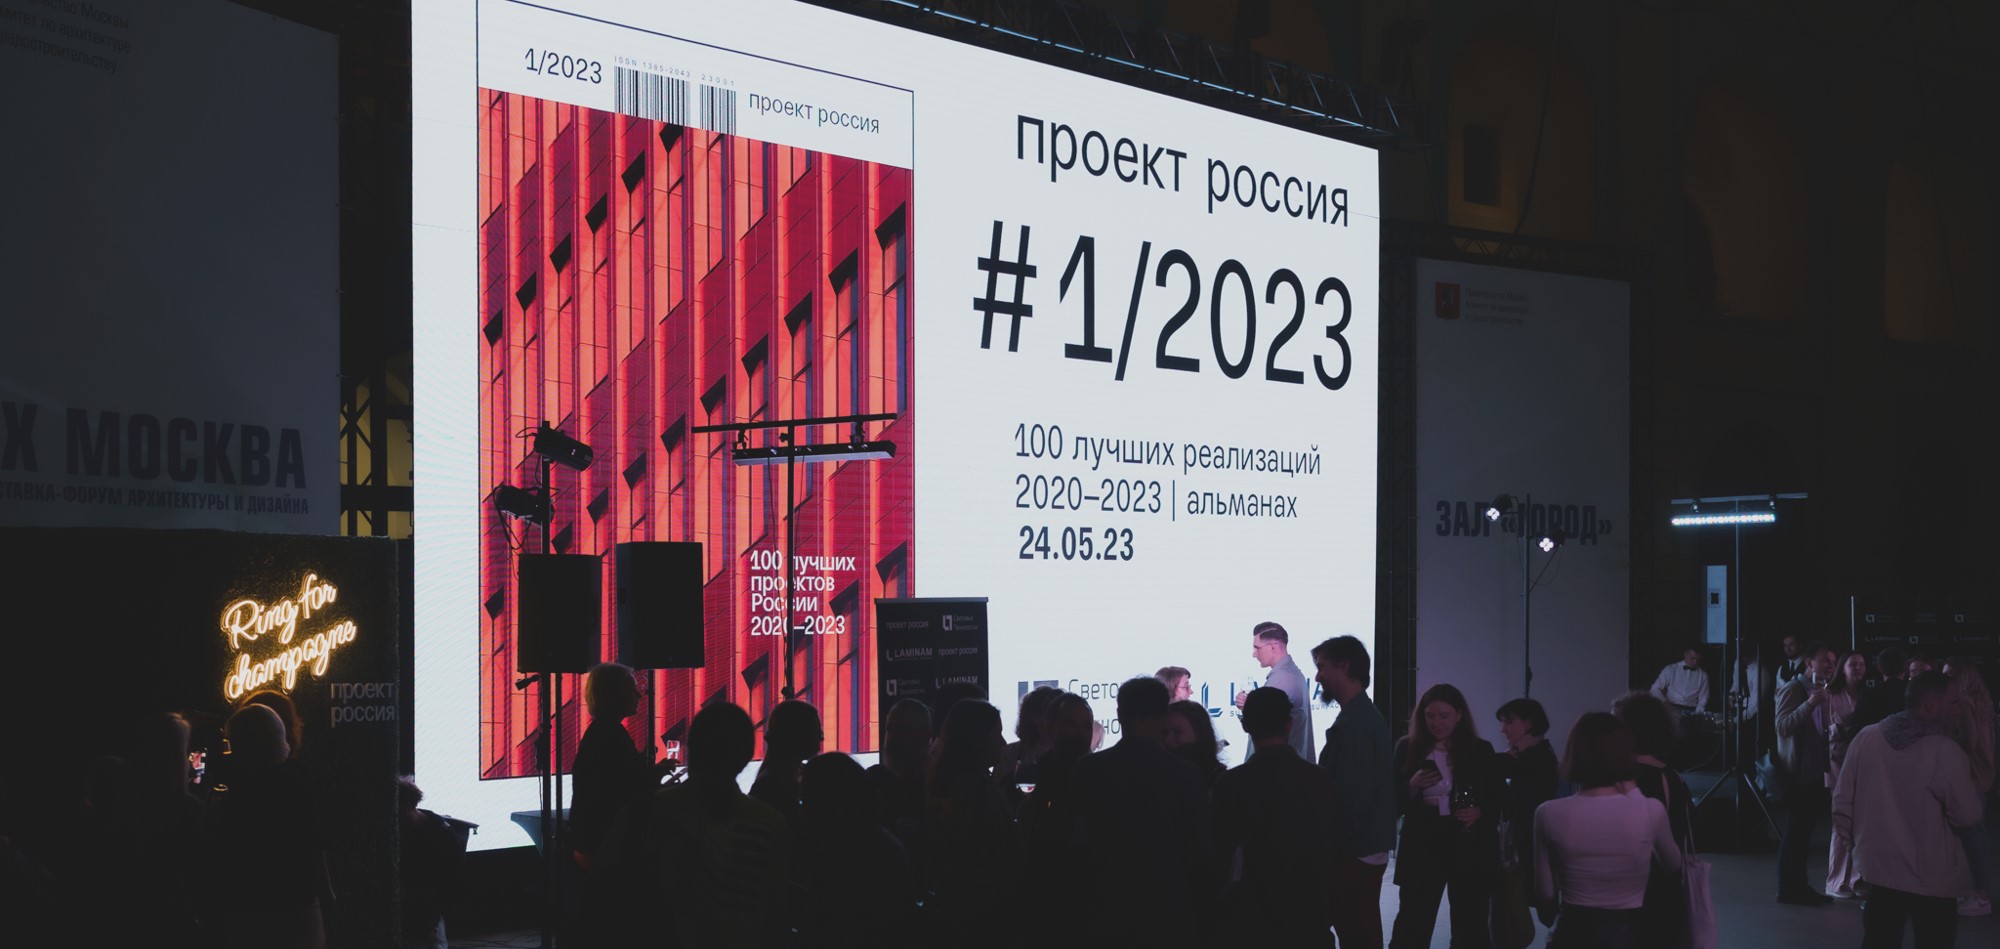 100 лучших проектов России реализованных в 2020-2023